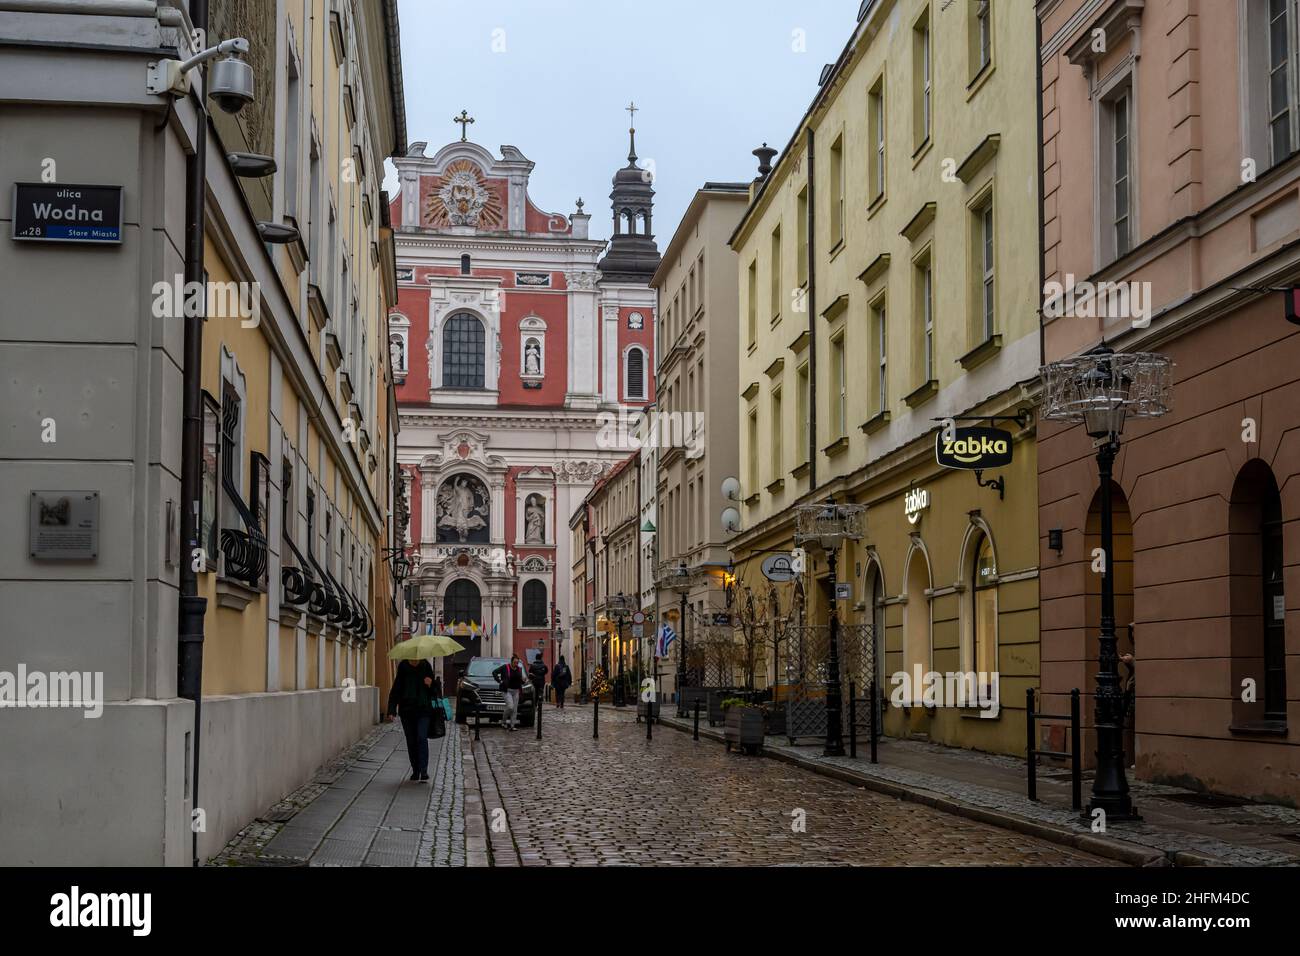 Eine alte Stadtallee in der Nähe des Renaissance-Marktplatzes in Posen, West-Zentral-Polen Stockfoto